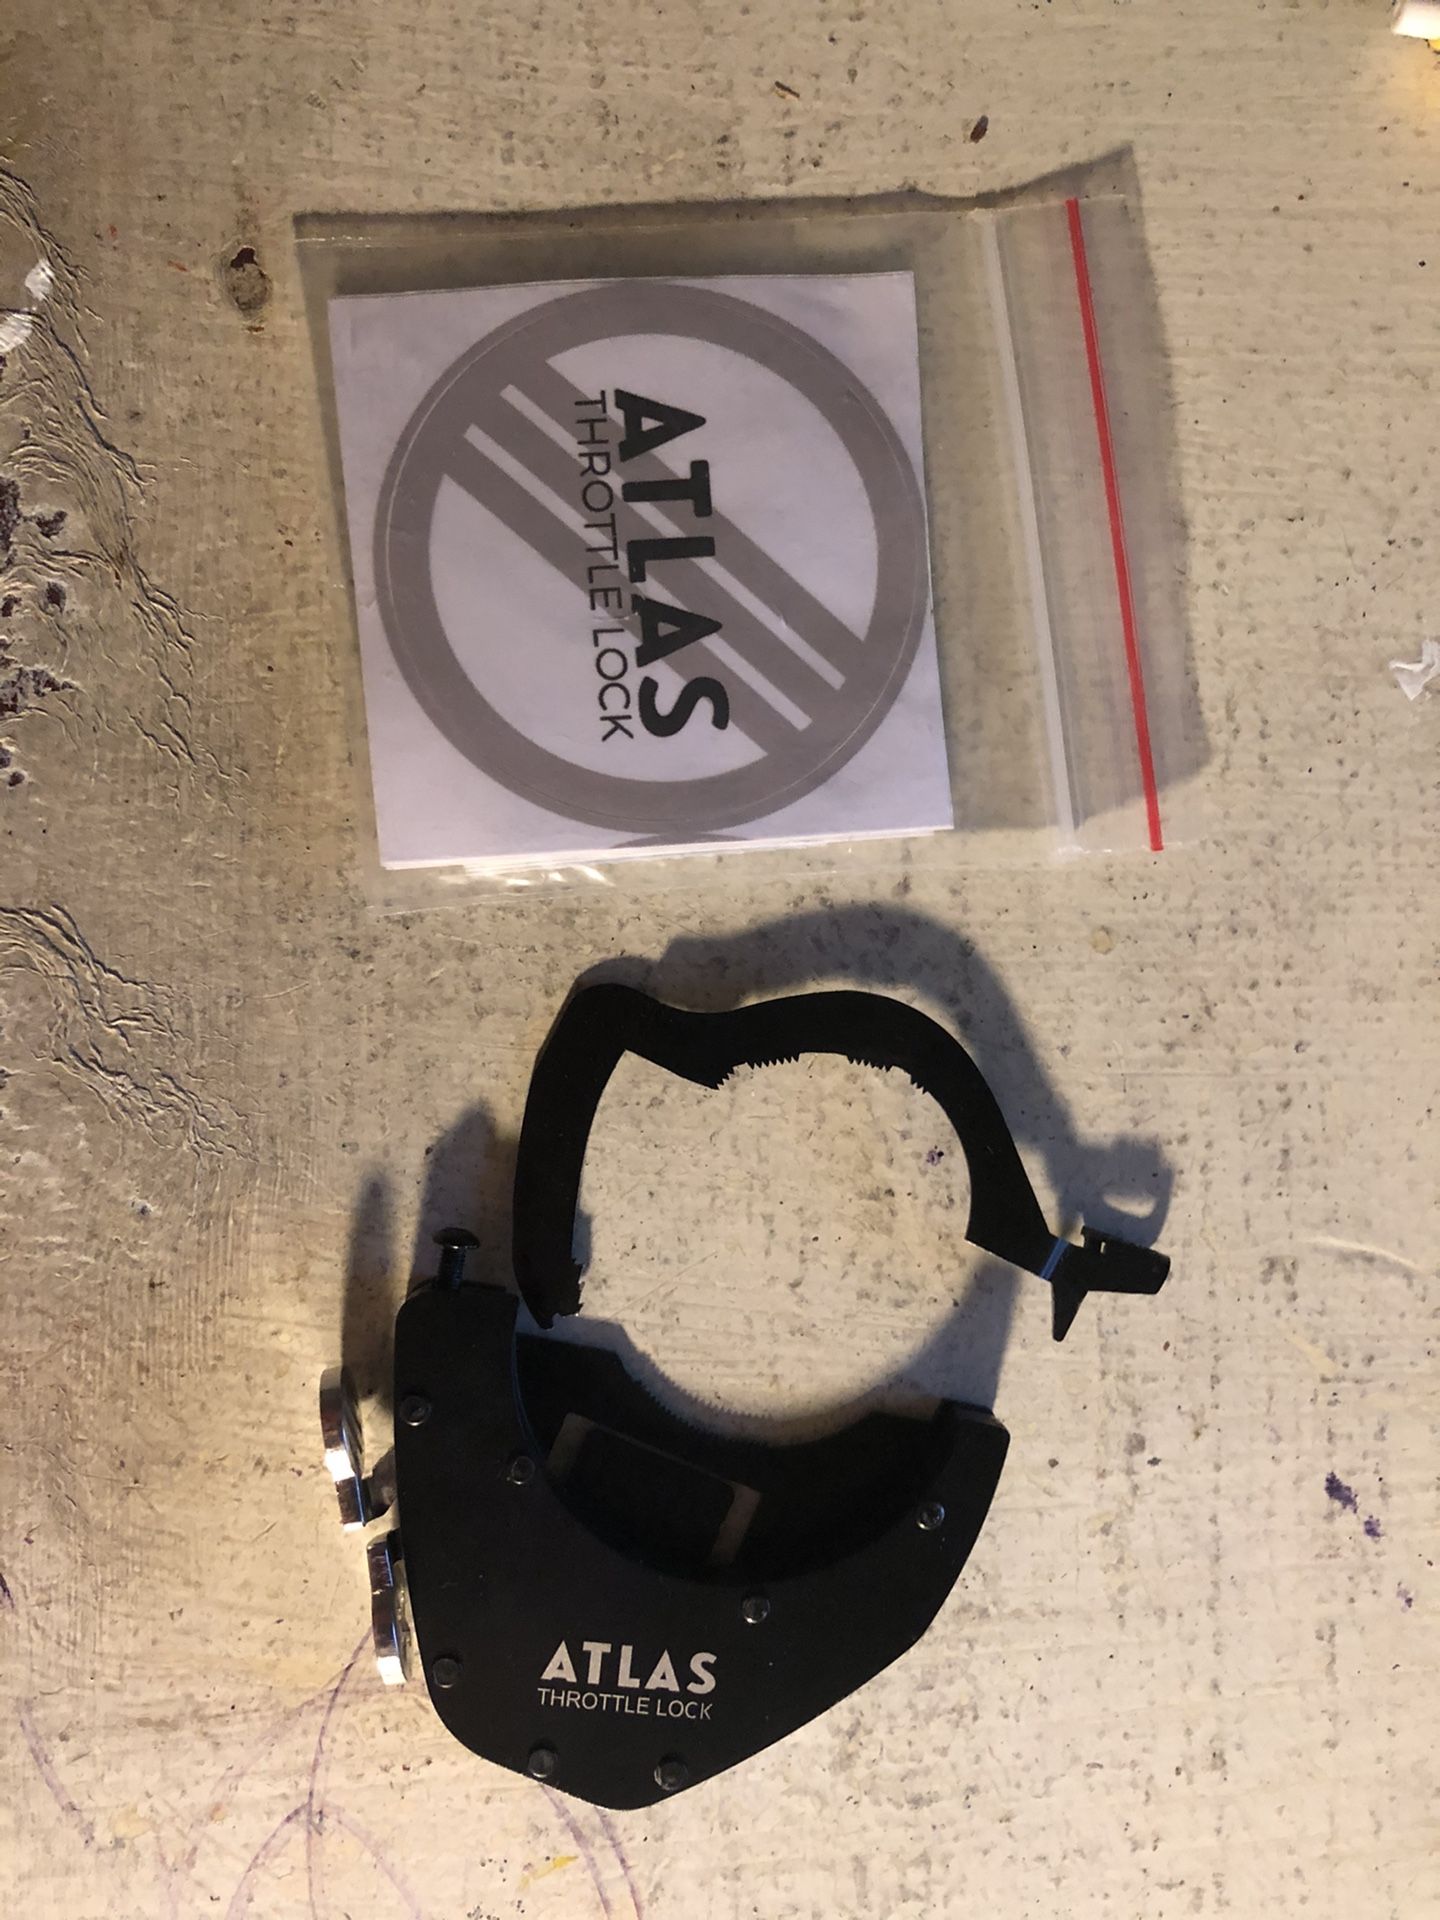 Atlas Throttle Lock for Motorcycle - bottom kit